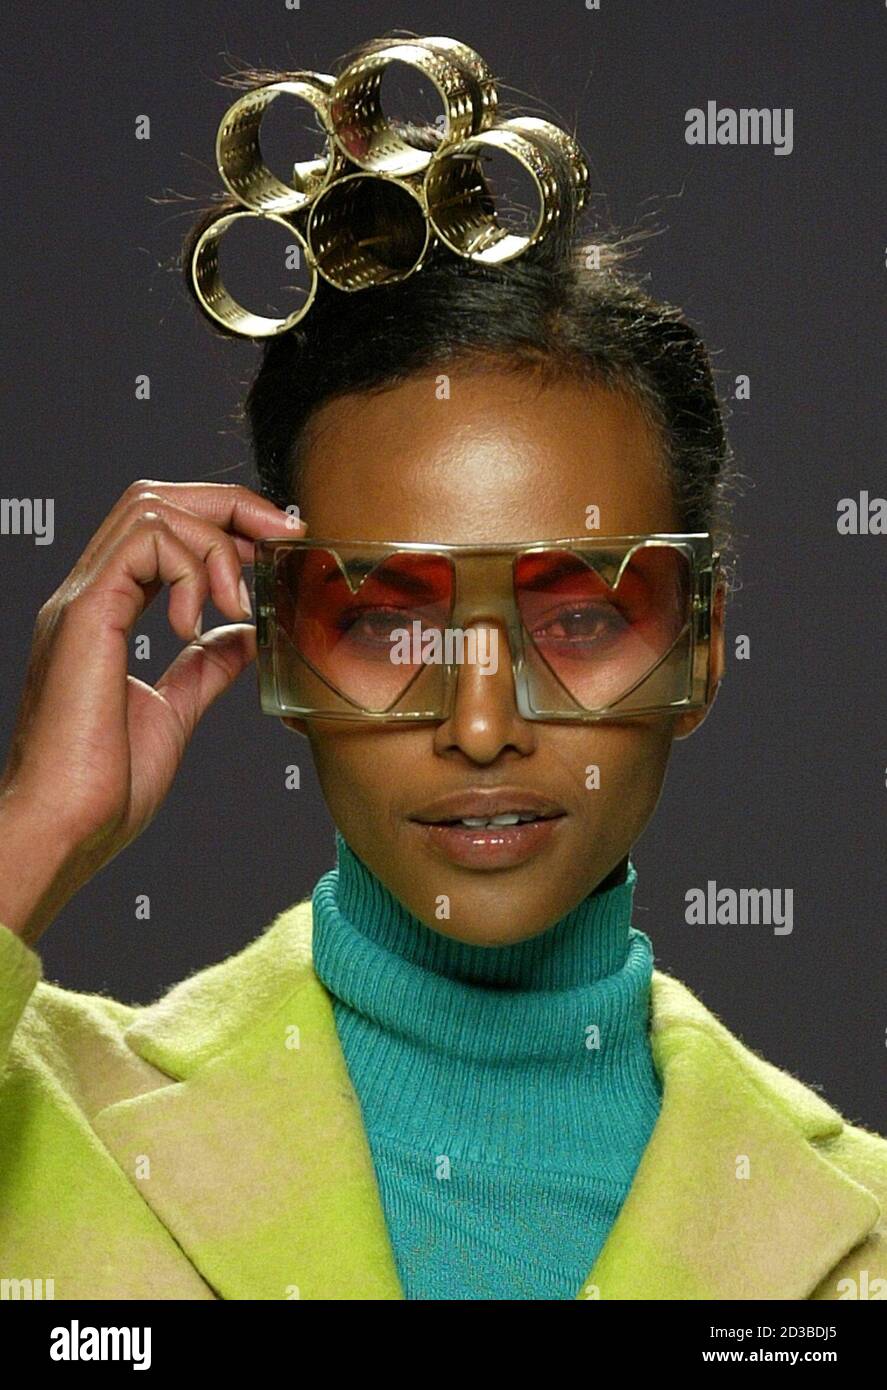 Un modello di occhiali da sole sportivi da cuore mentre espone per la  stilista spagnola Agatha Ruiz de la Prada alla sfilata Pasarela Cibeles il  giorno di San Valentino, febbraio 14, 2005.